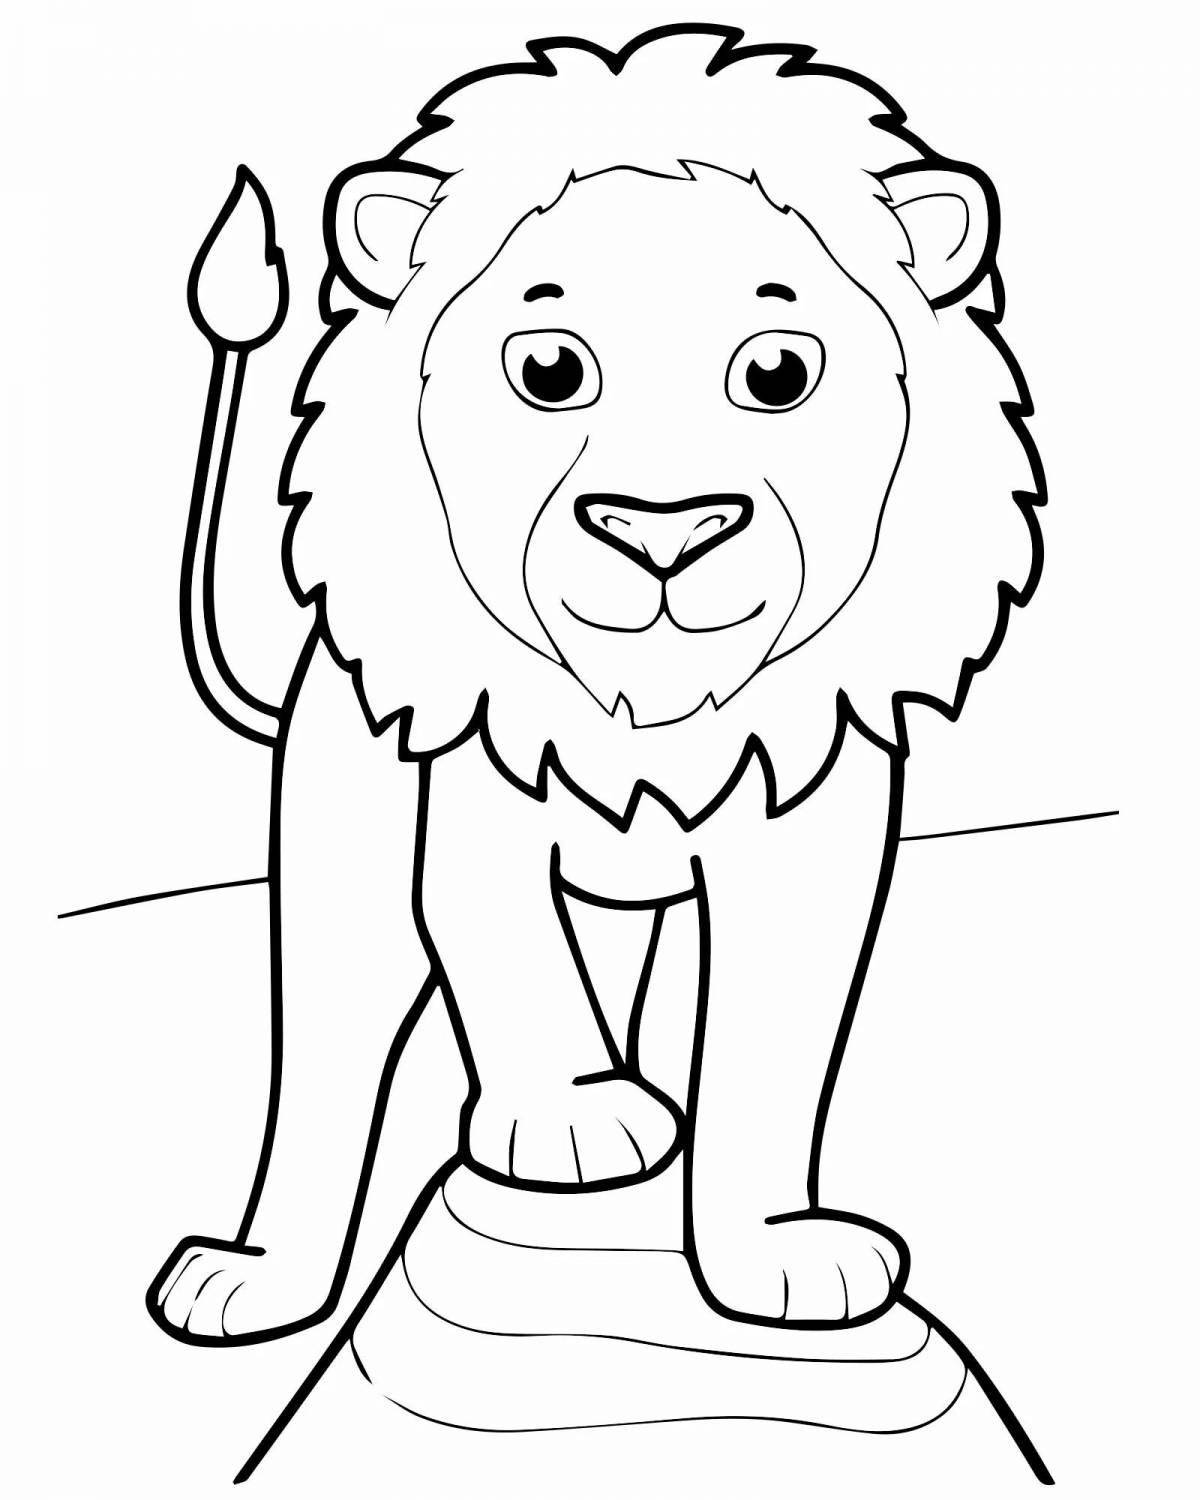 Изысканная раскраска льва для детей